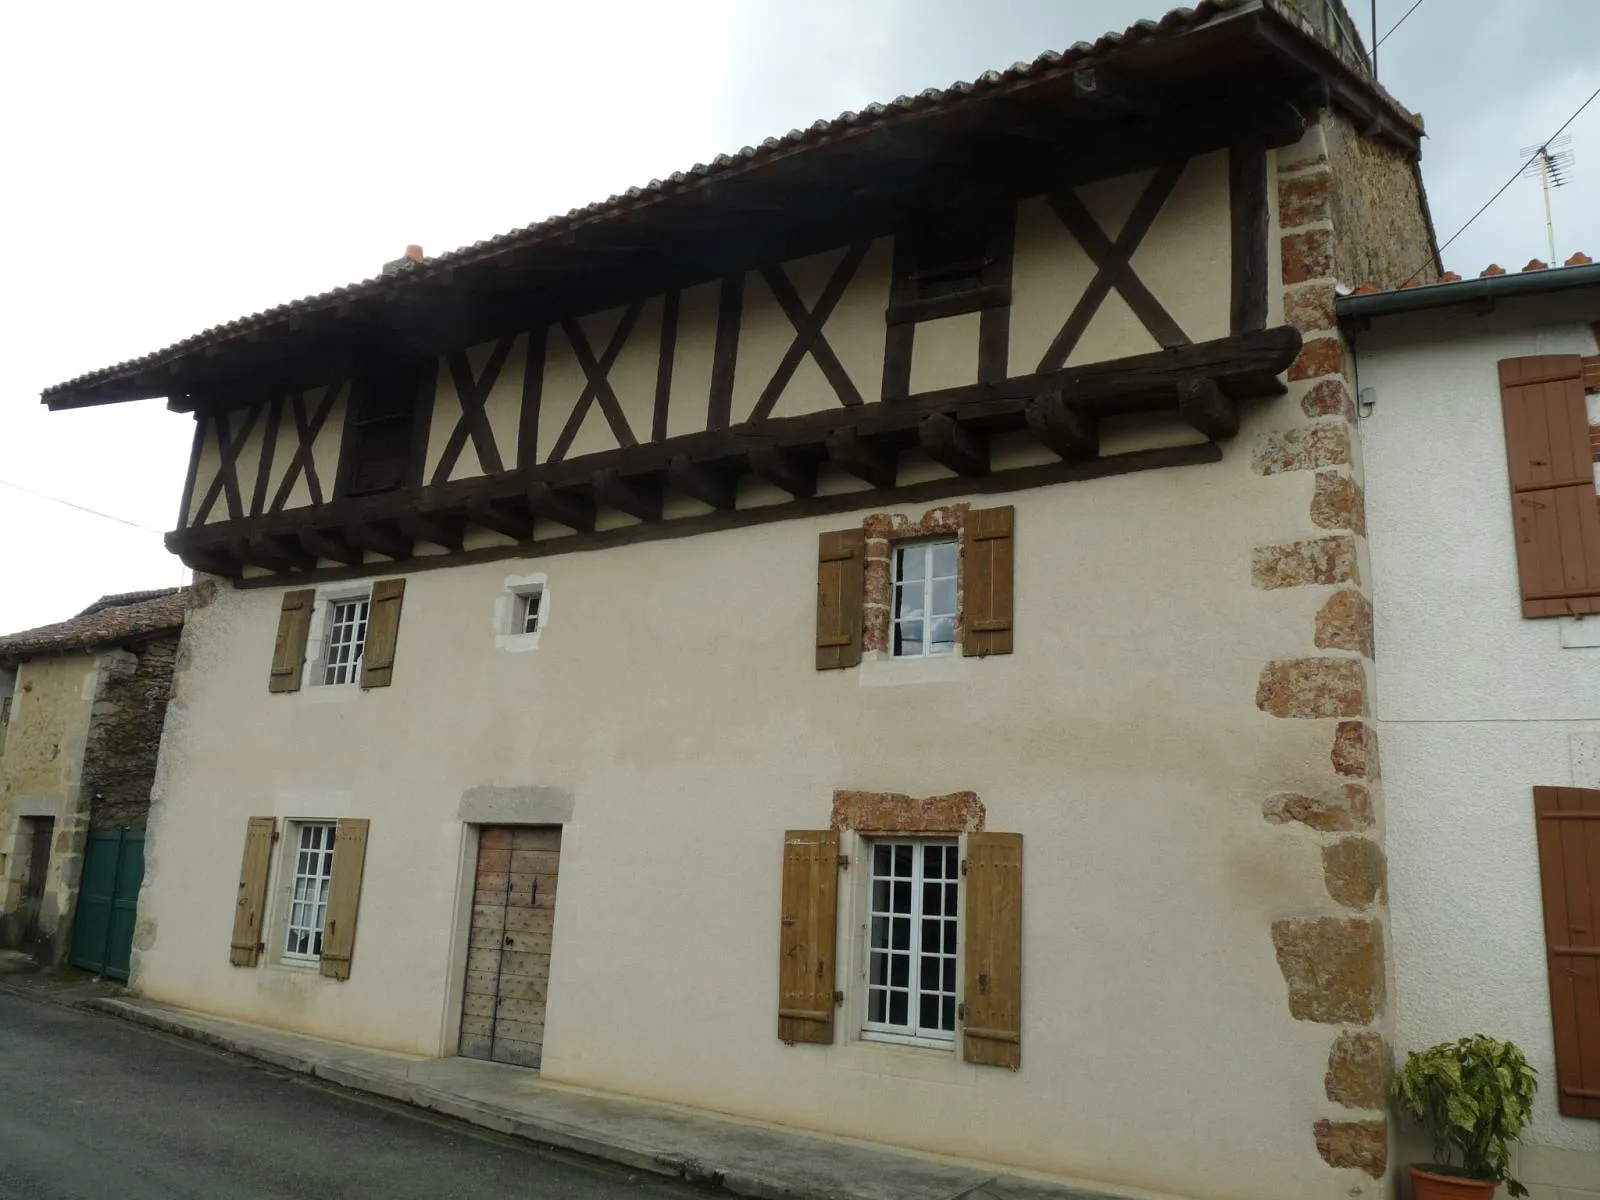 Photo showing: maison à colombages à Chantrezac, Charente, France